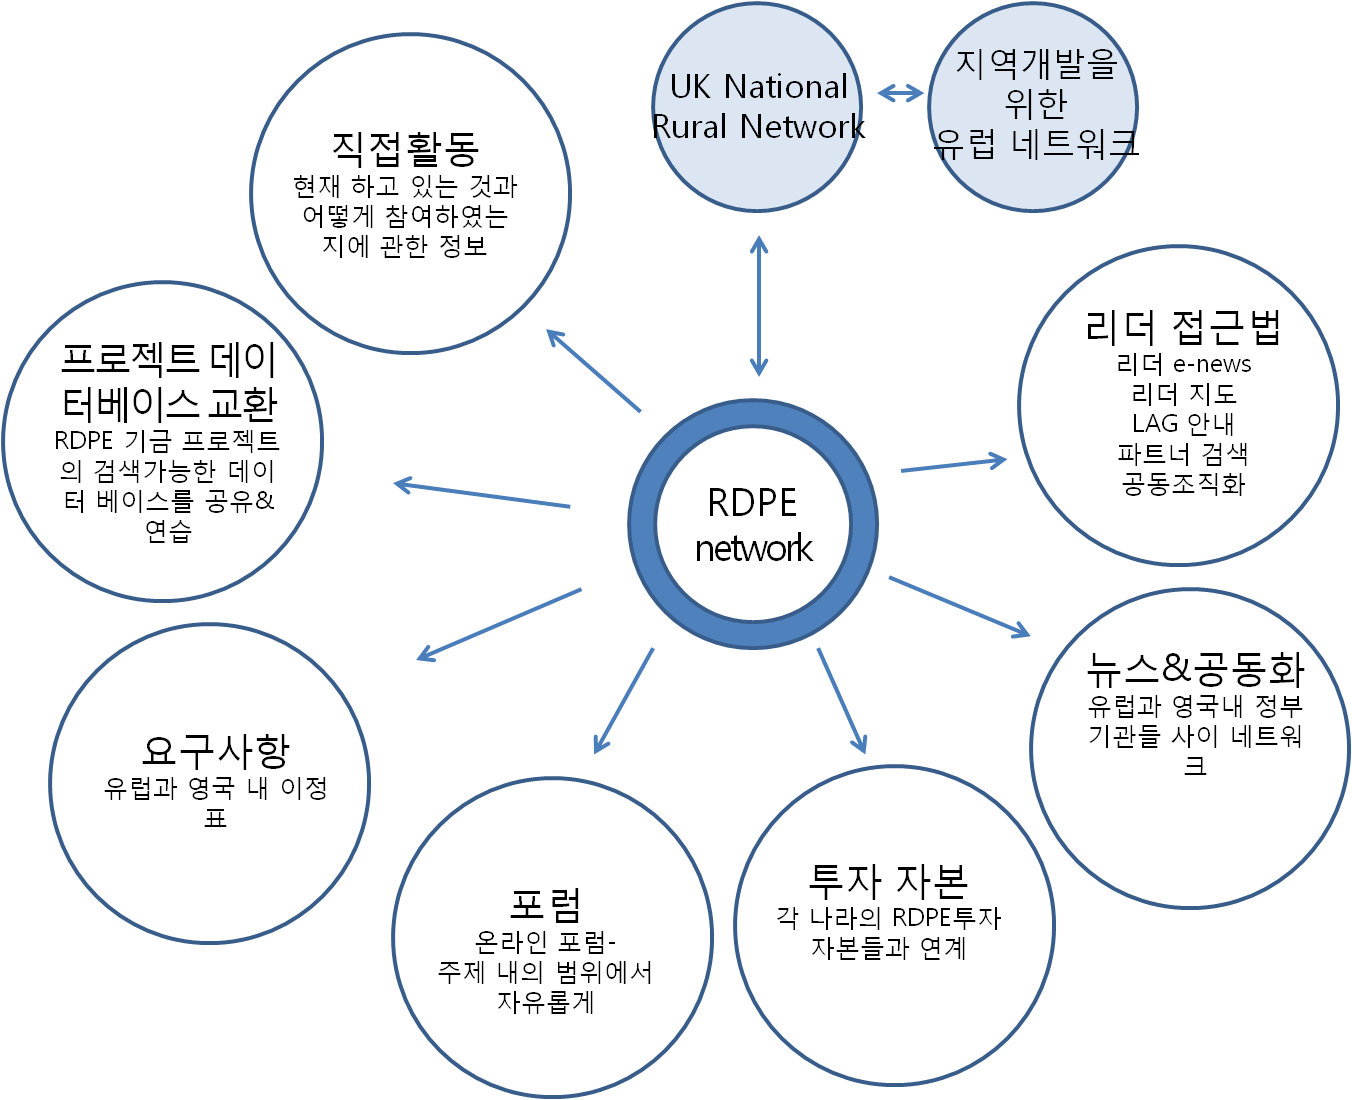 (그림 3-9) RDPE 네트워크의 역할